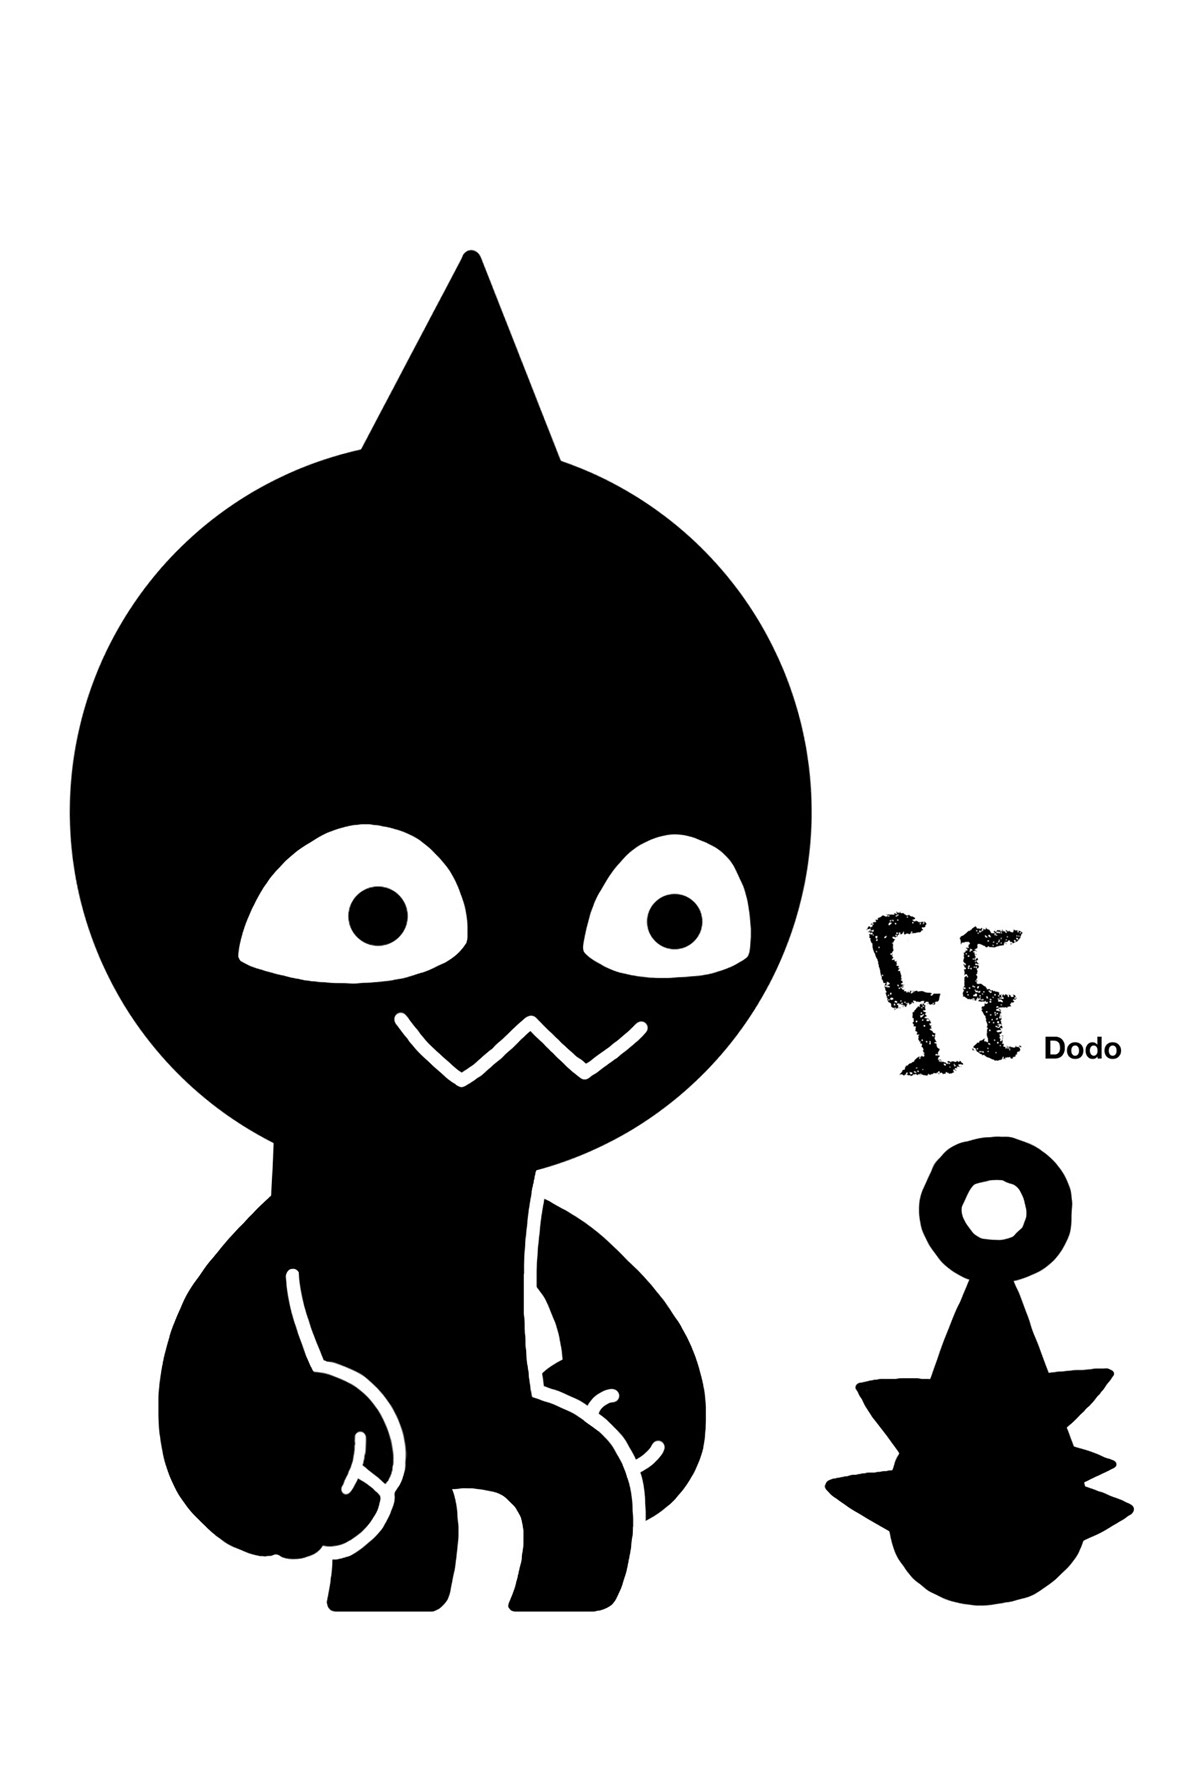 Character design  creature ghost horror monster dark forest goblin Korea nanoo